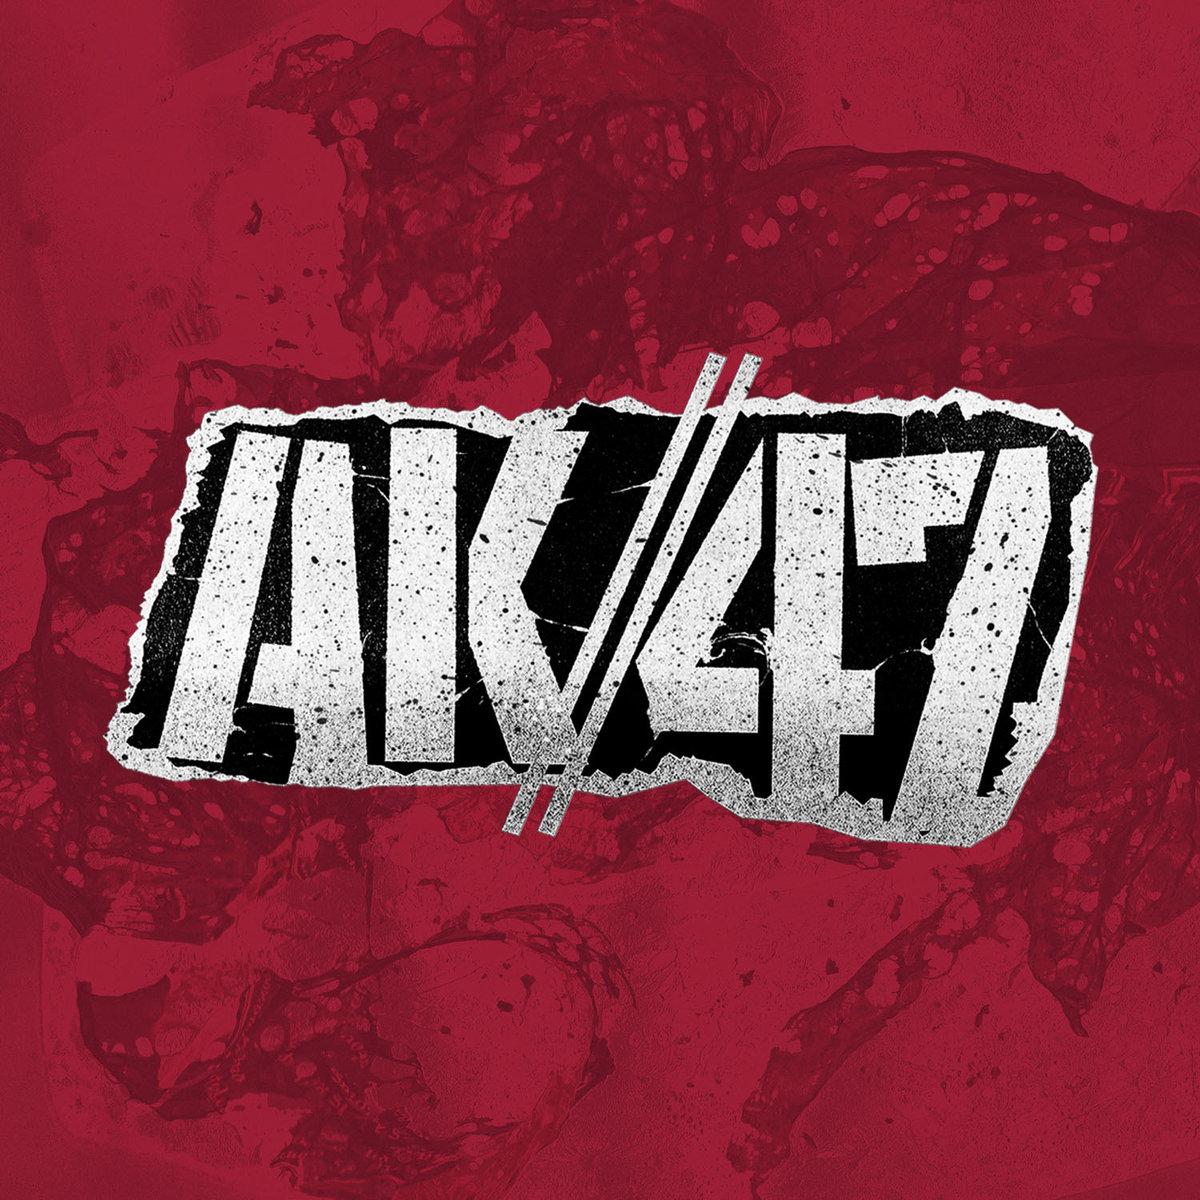 AK//47 - Discography (2016-2018) .